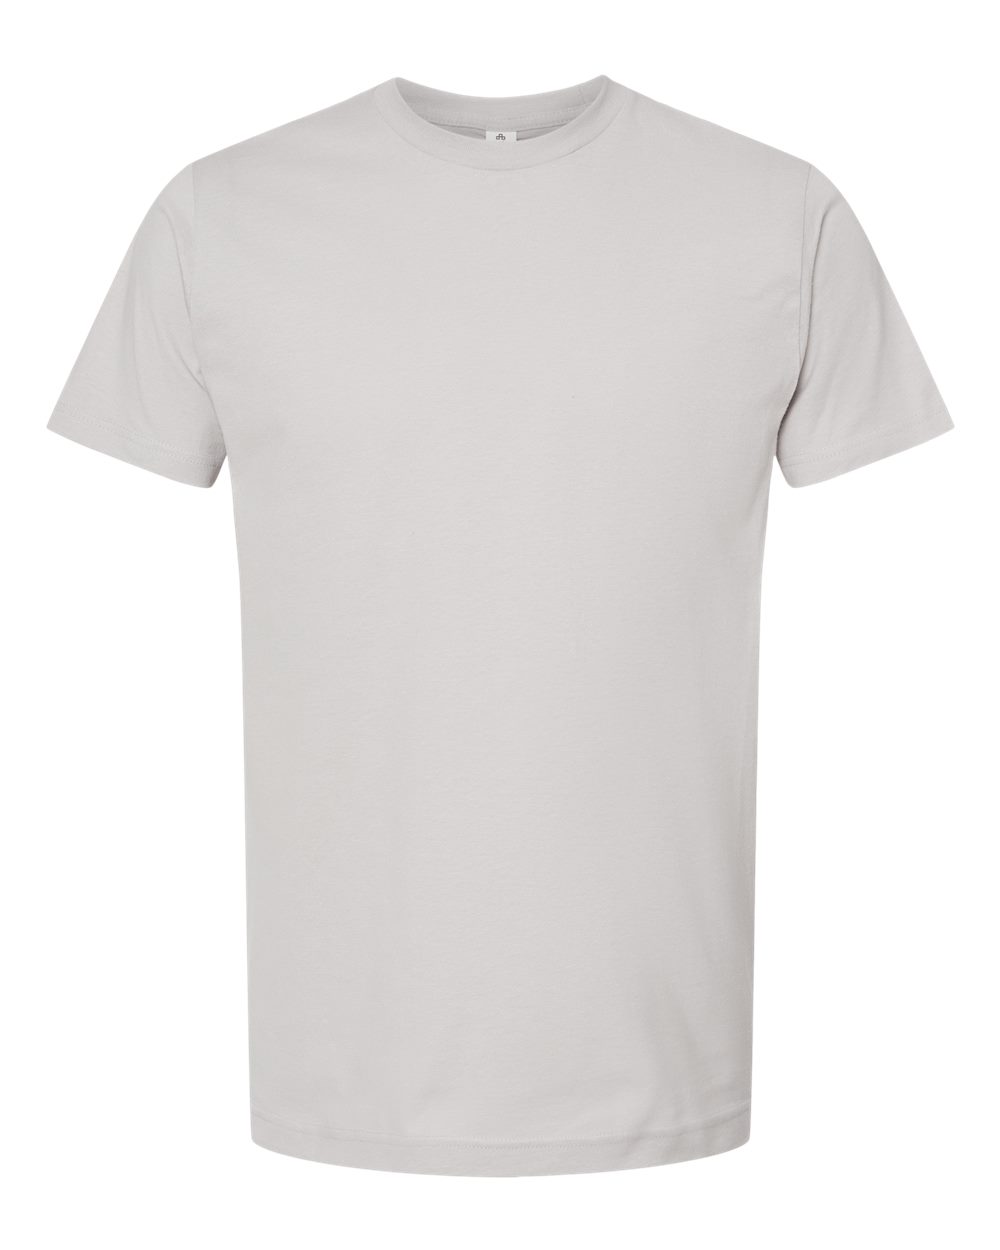 Tultex - Fine Jersey T-Shirt - 202 COLOR SET #2 SKU#TUL20210259